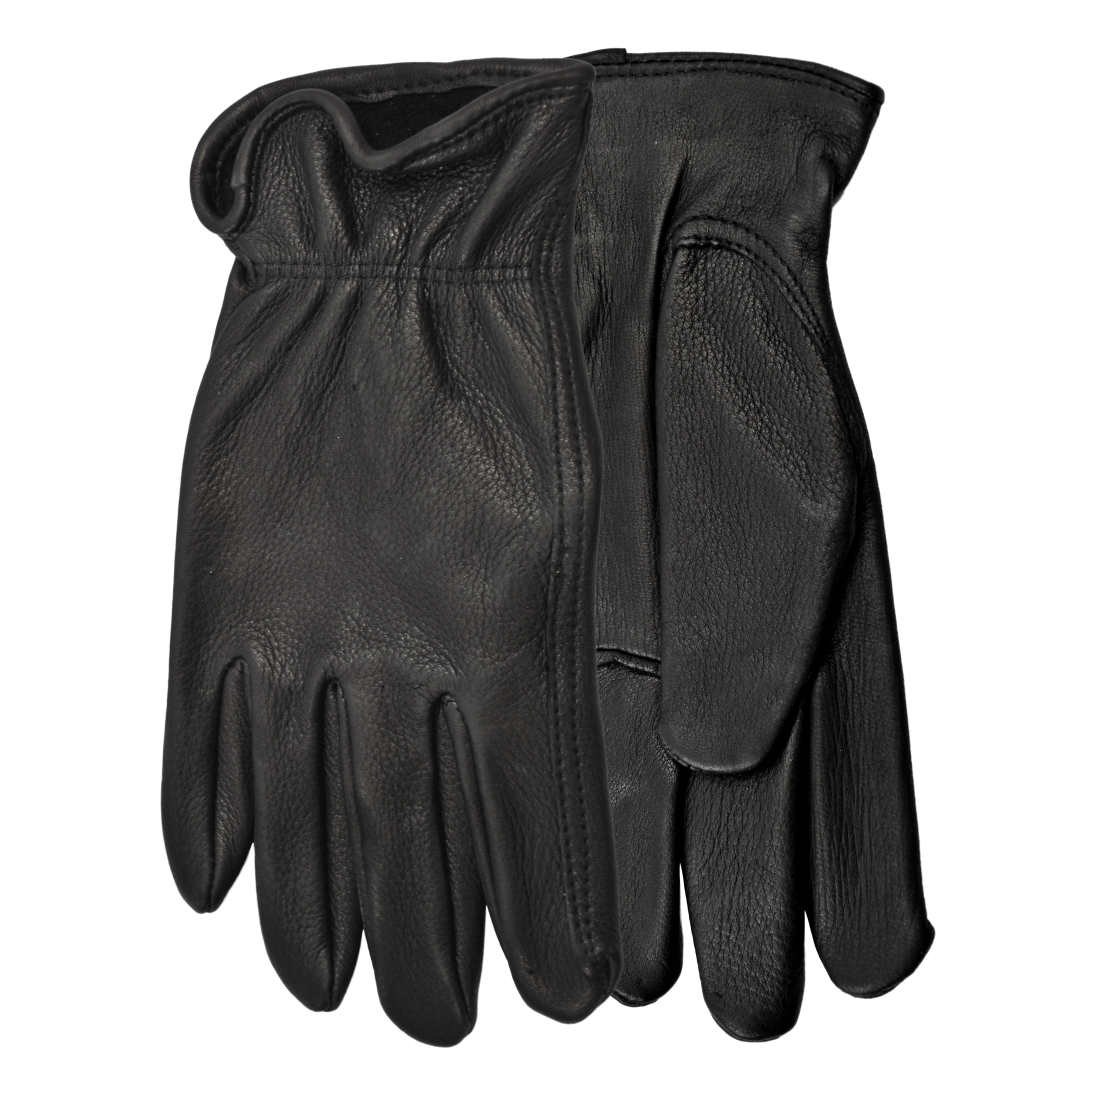 Range Rider Black Men’s Gloves